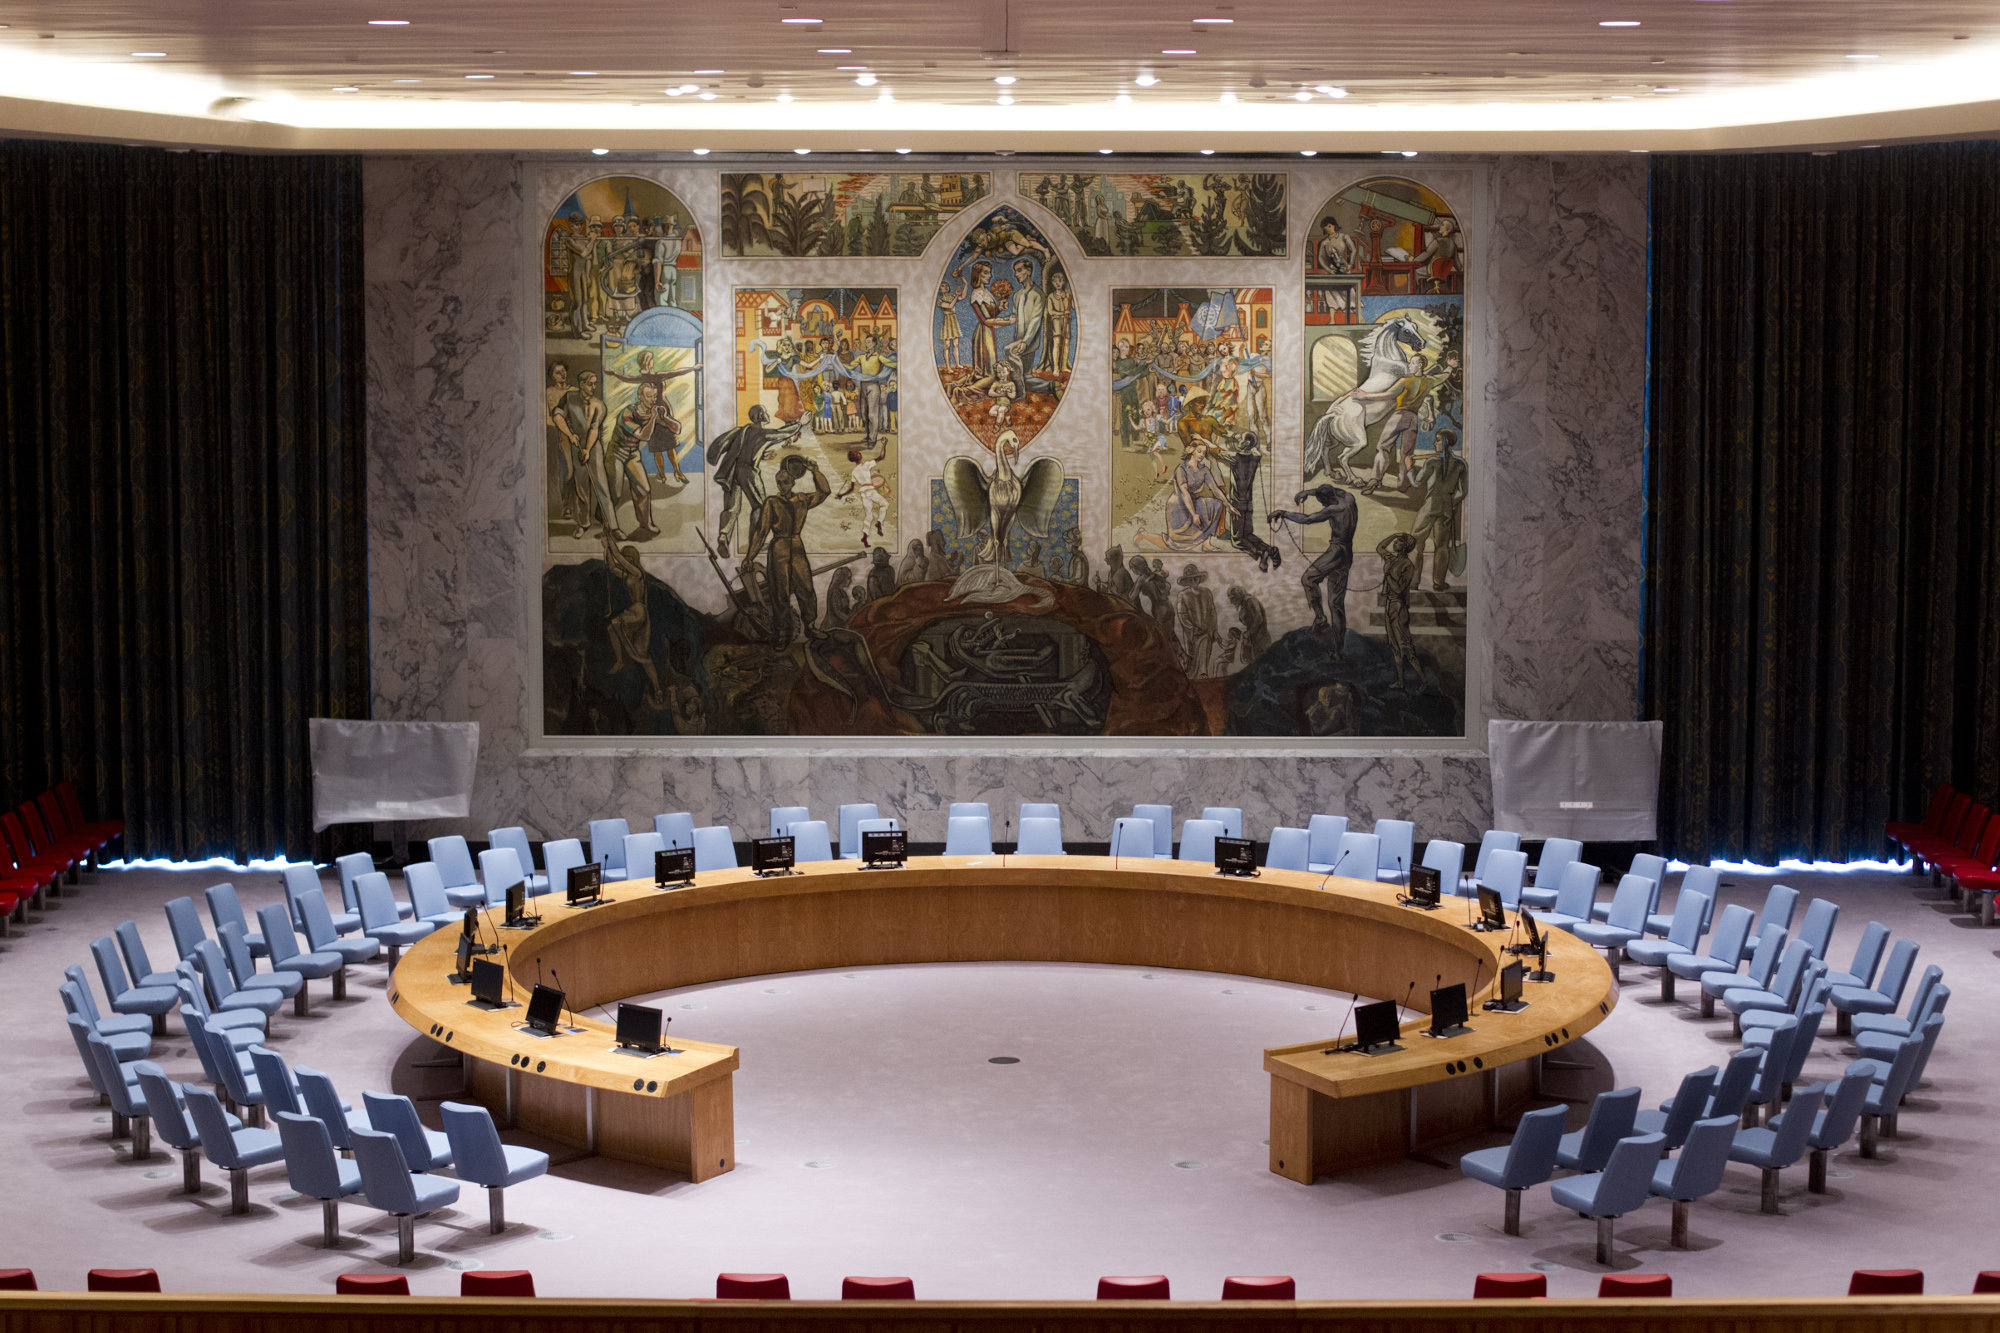 Образ оон. Зал Совбеза ООН. Организация Объединенных наций и совет безопасности ООН.. Зал заседаний совета безопасности ООН. Зал заседаний Совбеза ООН.